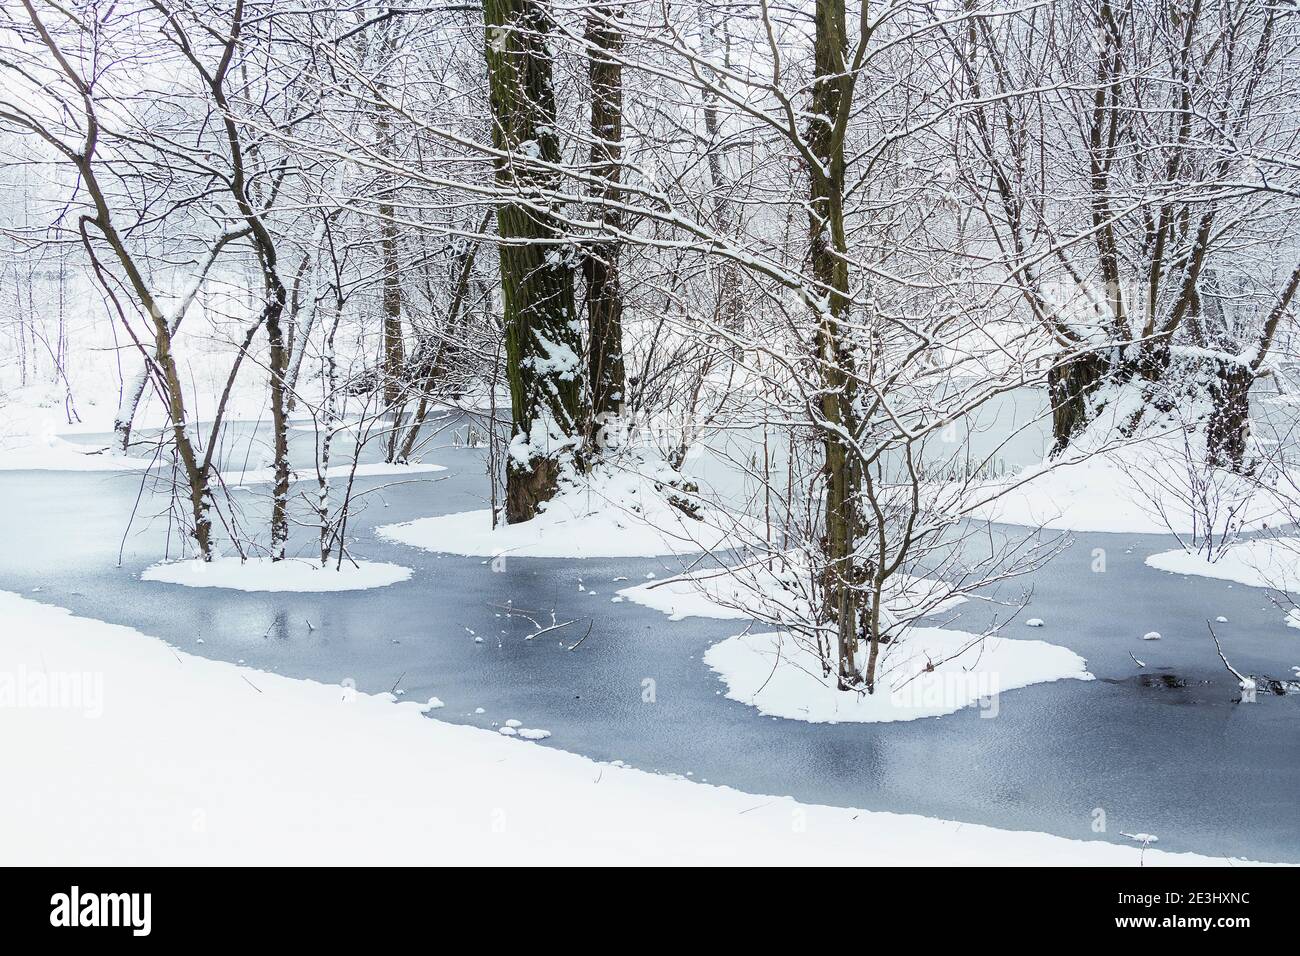 Nieve fresca cubierta de árboles en el bosque con agua inundada congelada en invierno Foto de stock